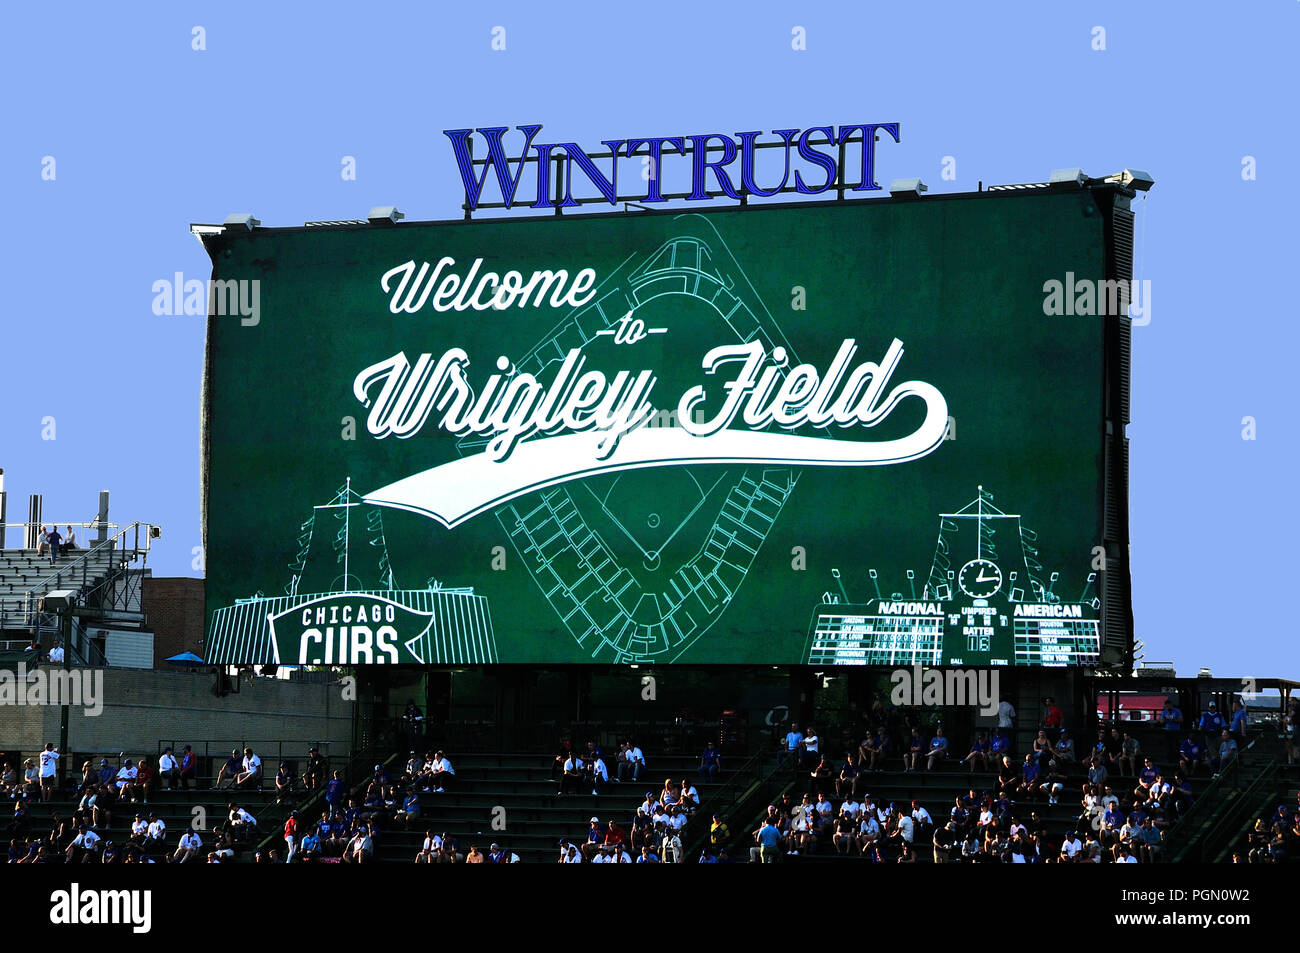 Le stade de baseball MLB Chicago Wrigley Field est l'endroit où les Cubs de Chicago jouer au baseball. Jeu de nuit d'oursons vs Cincinnati Reds. Banque D'Images